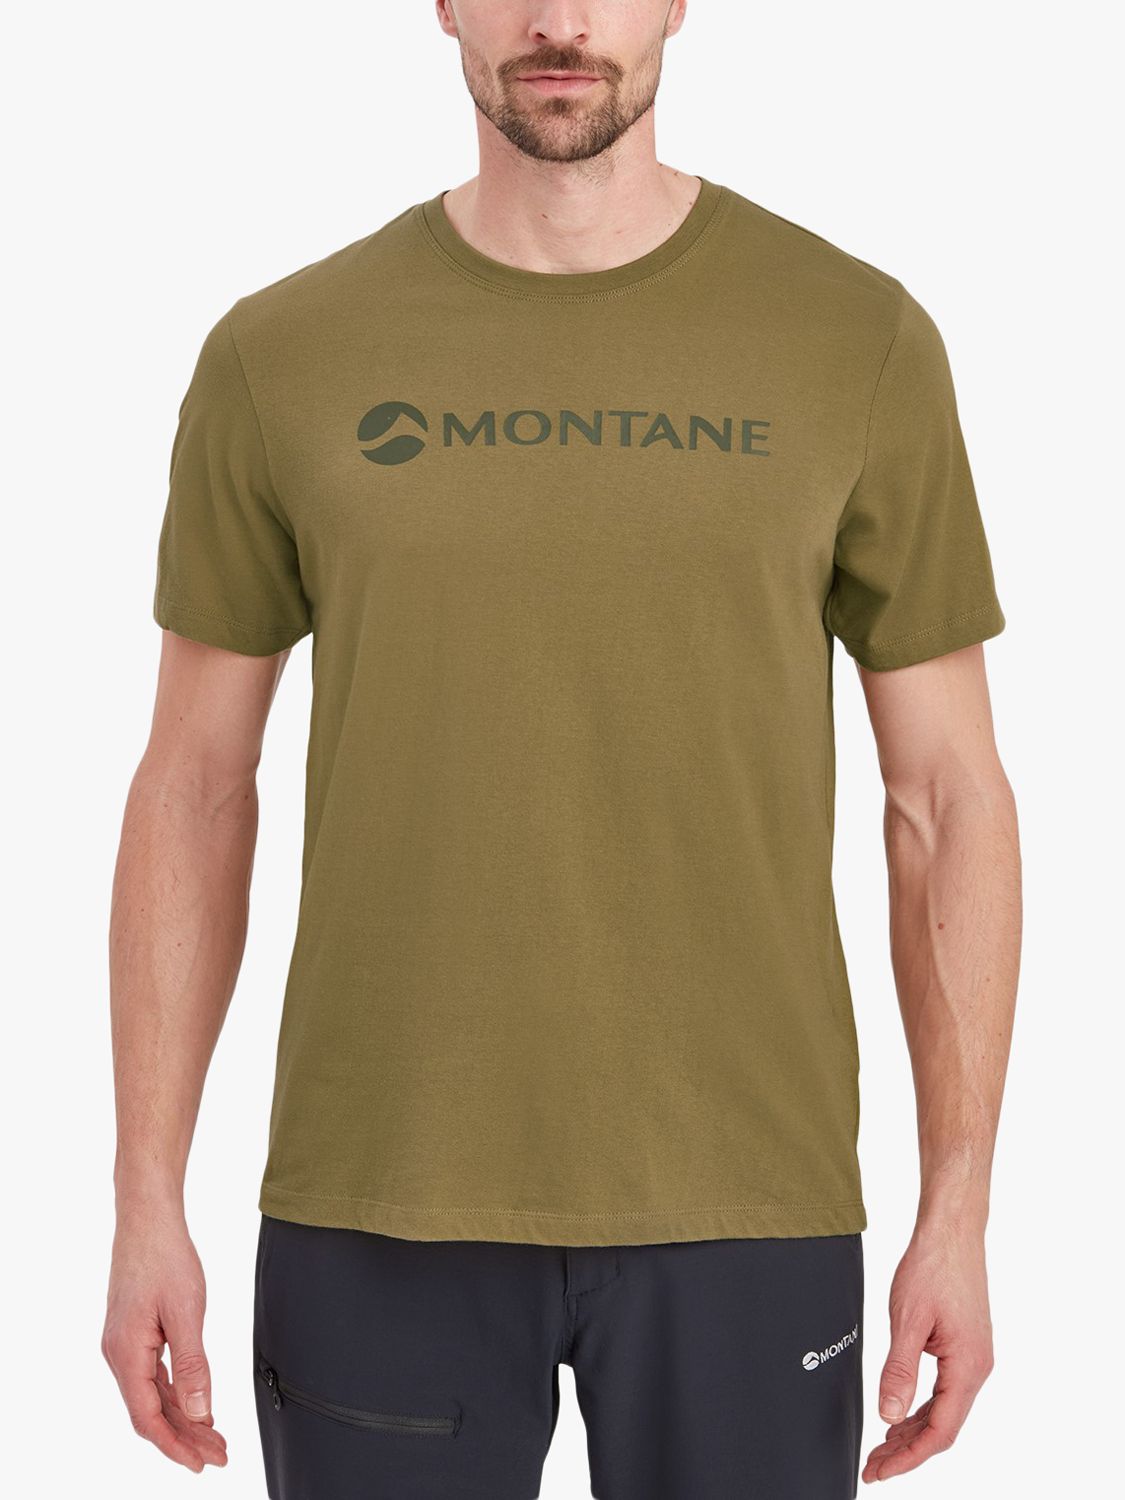 Montane Mono Logo Organic Cotton T-Shirt, Olive, XS